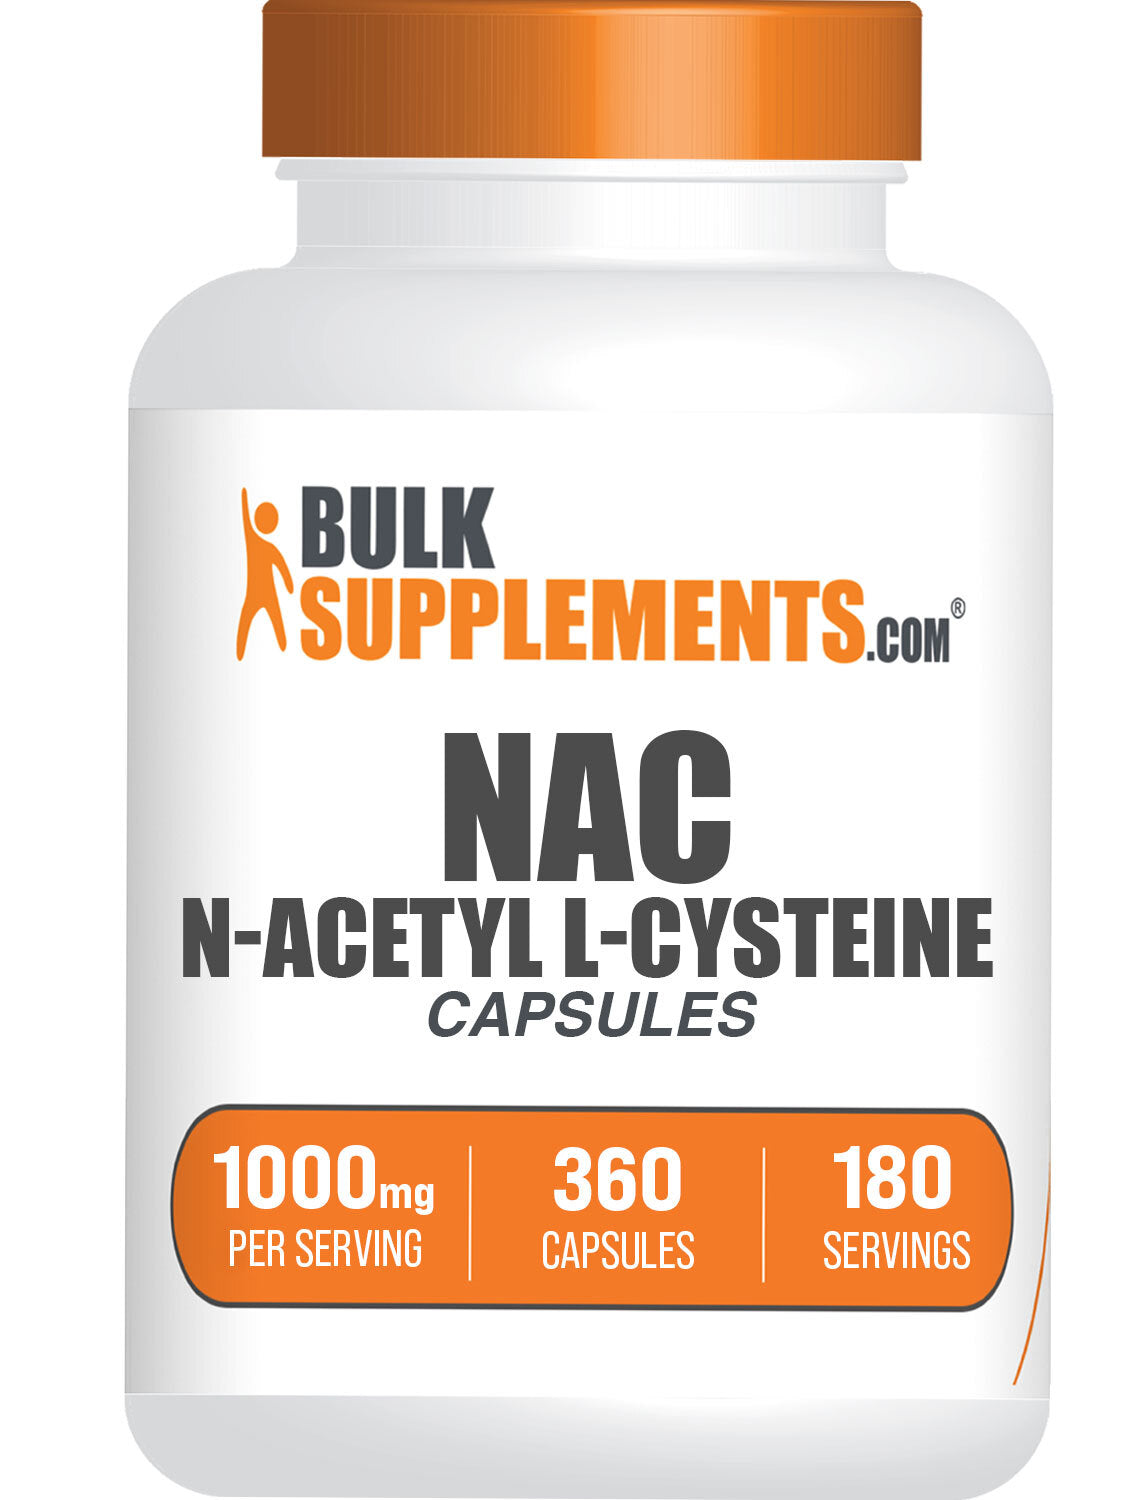 N-Acetyl L-Cysteine (NAC) Capsules